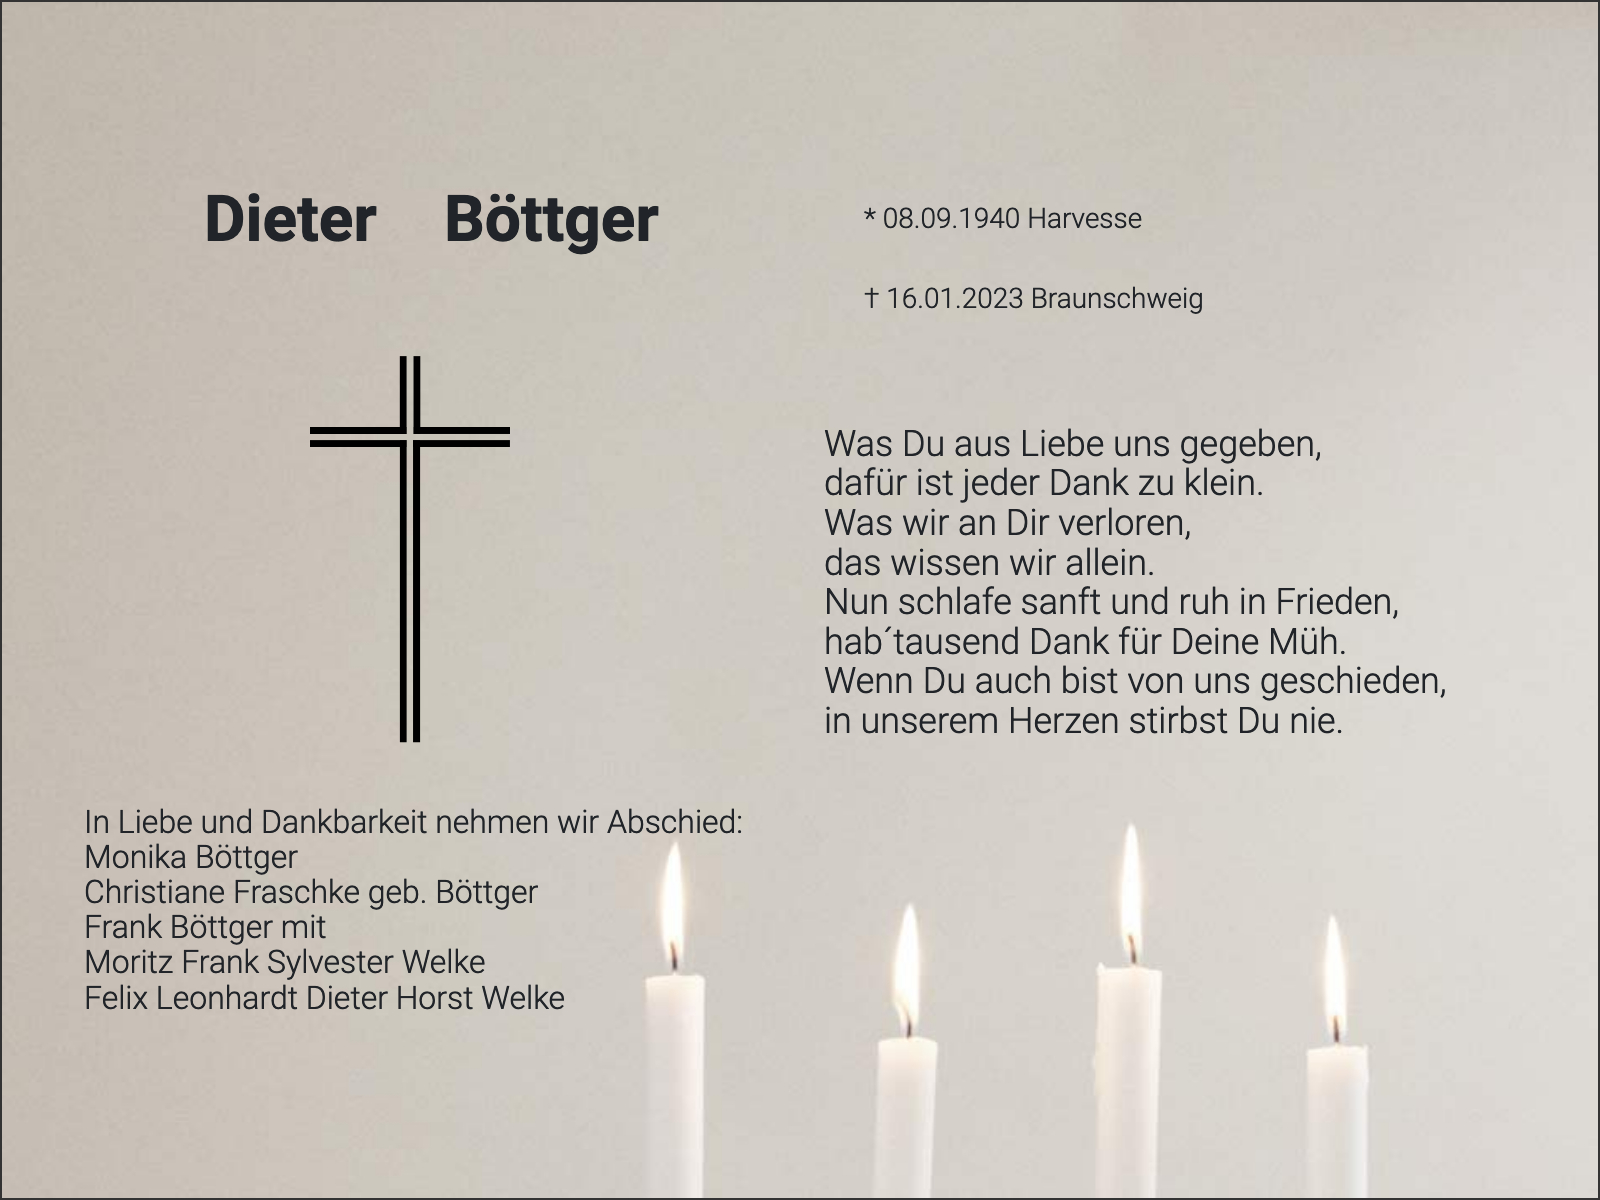 Traueranzeige Dieter Böttger